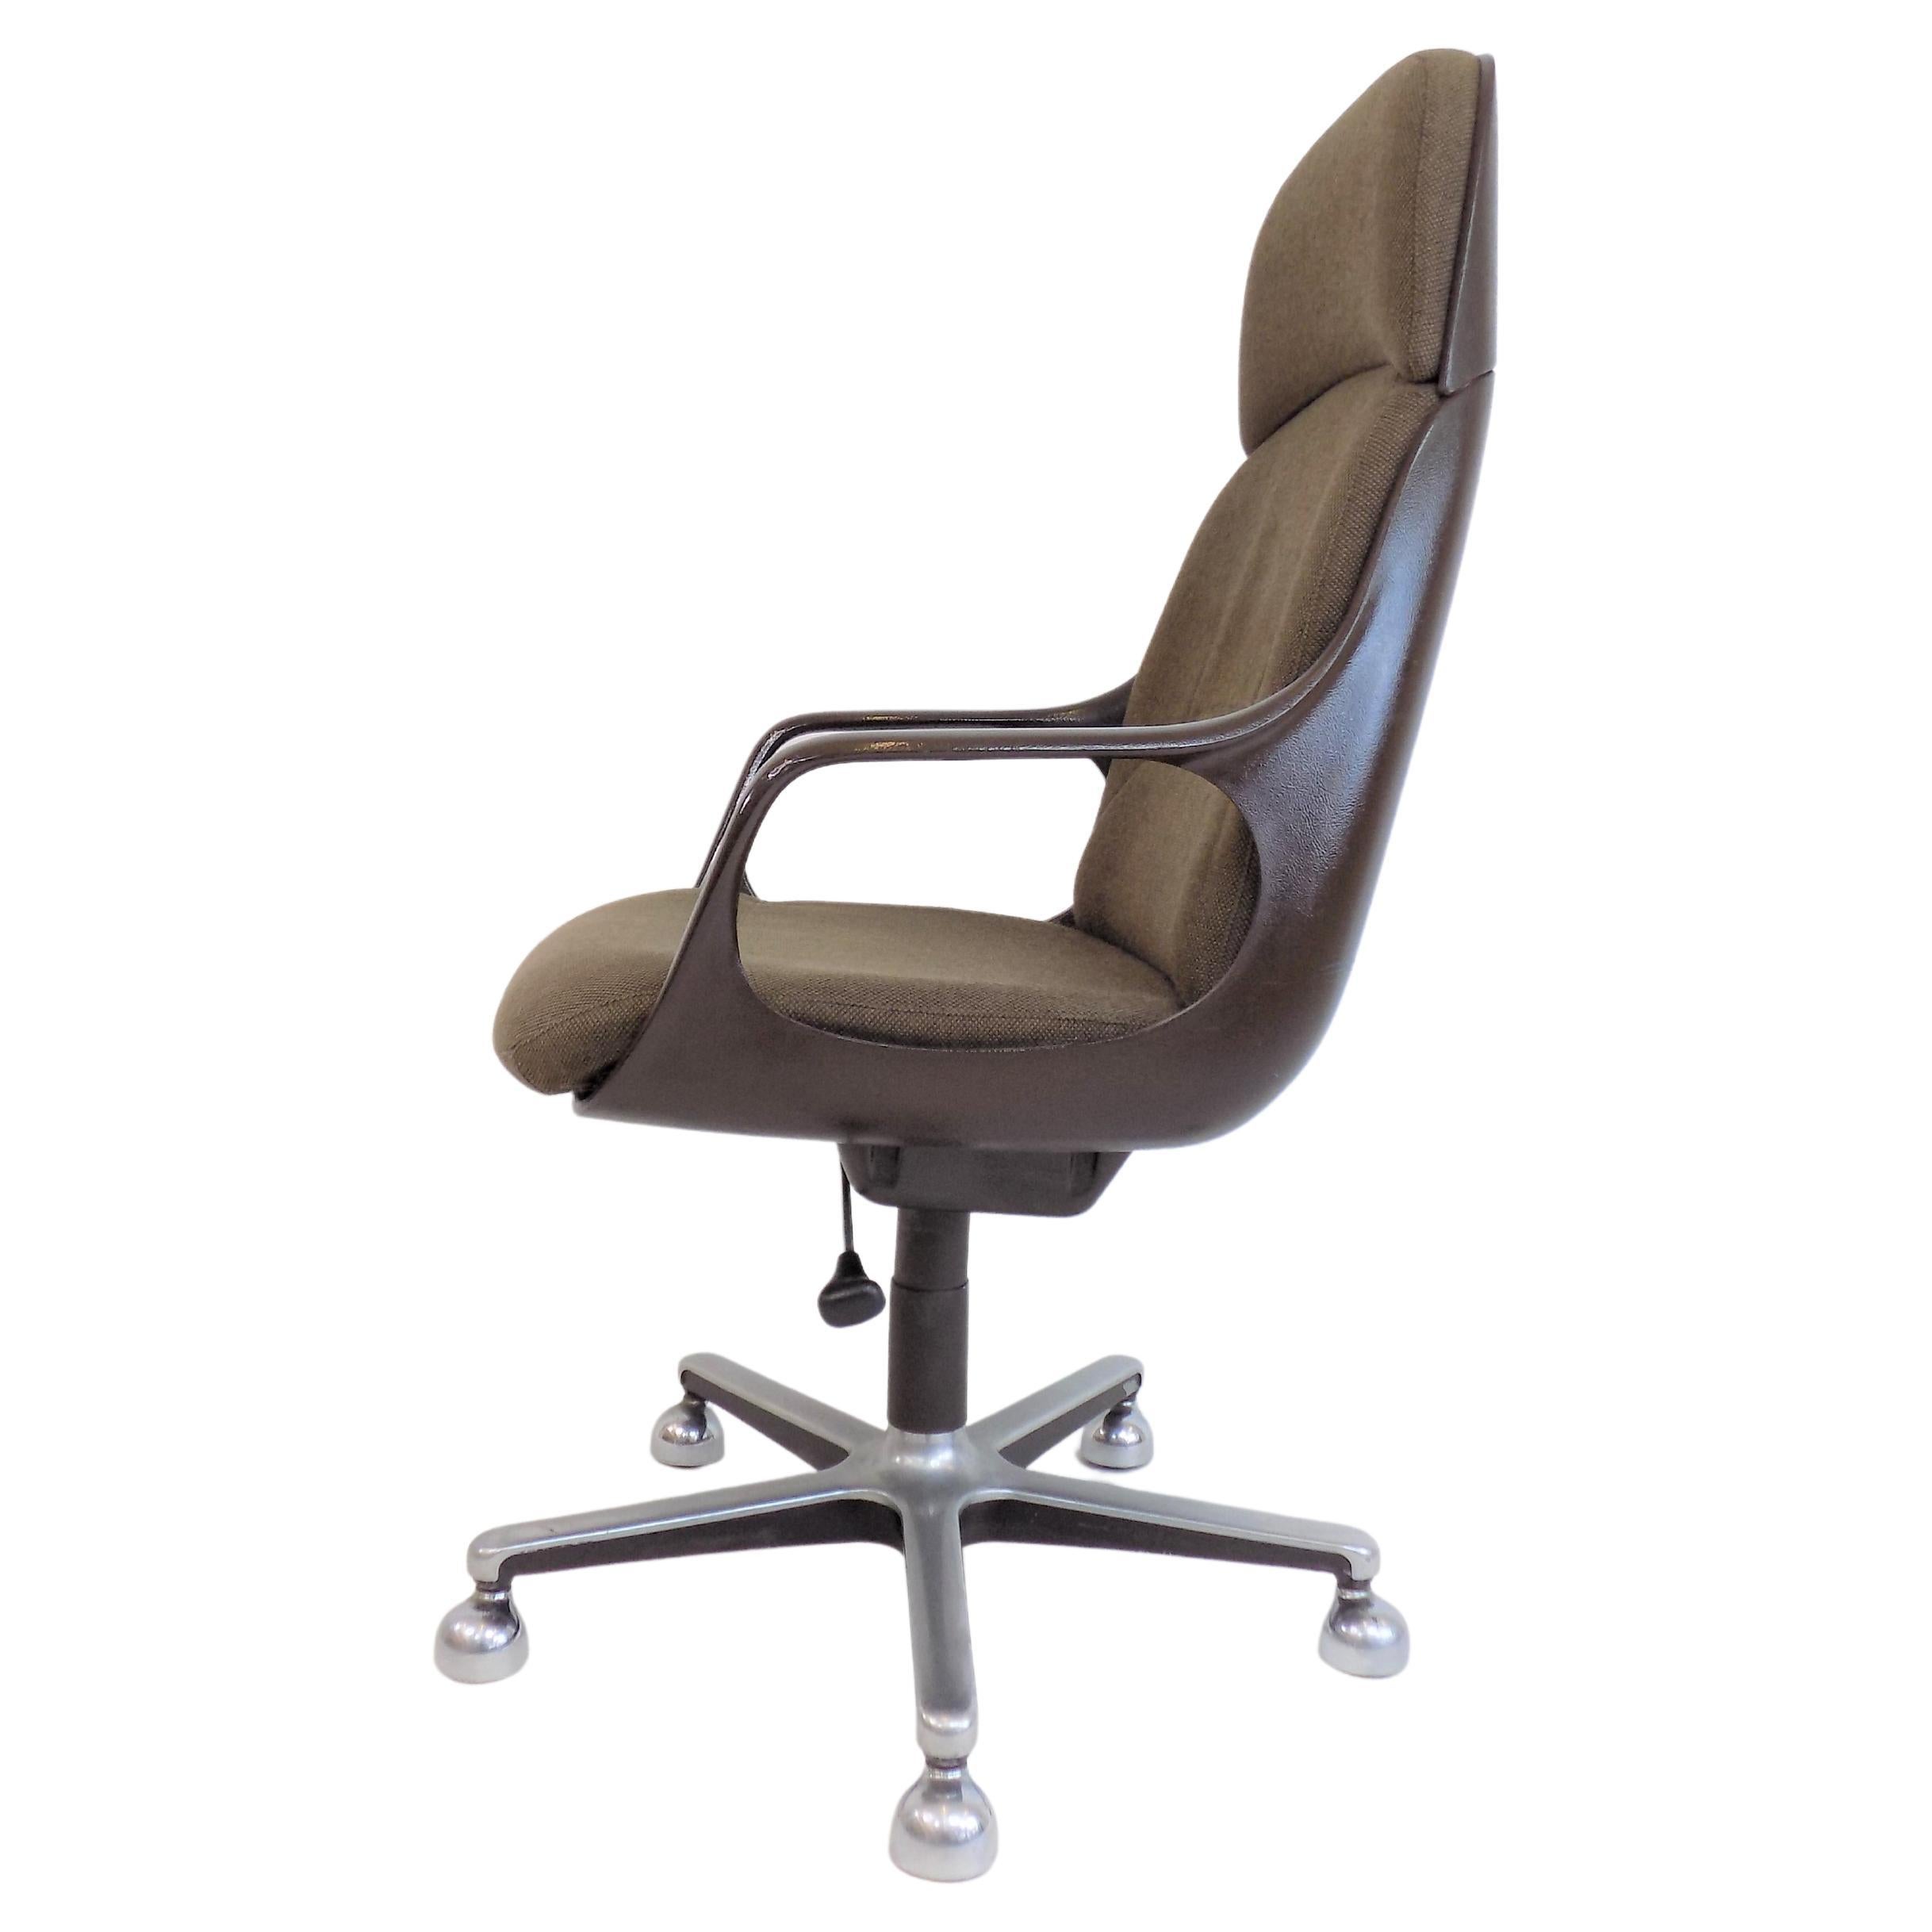 Drabert Concept Office Chair